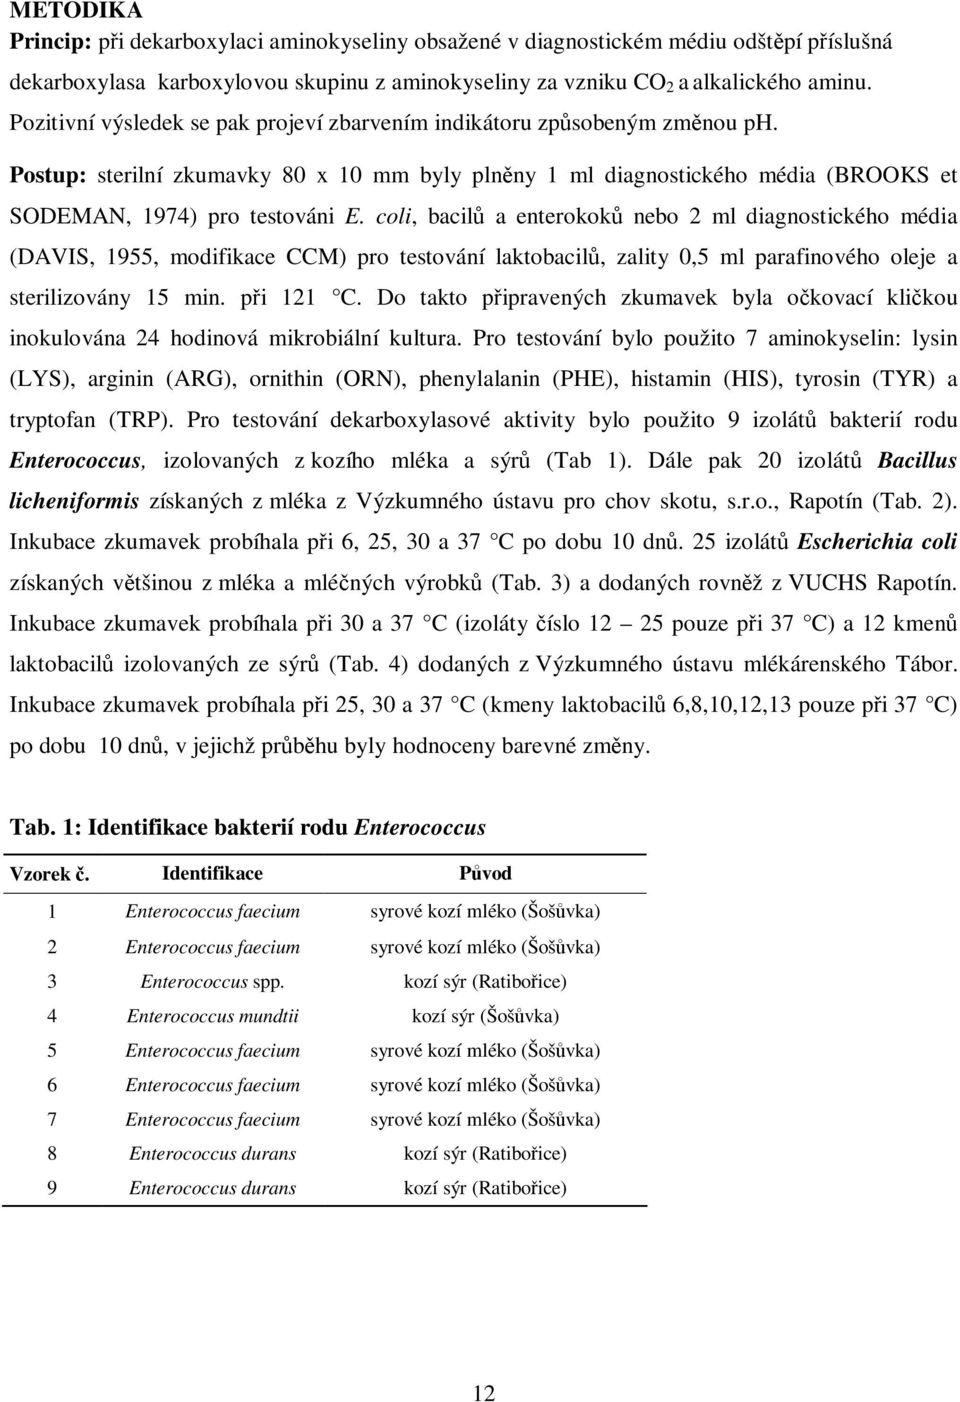 coli, bacil a enterokok nebo 2 ml diagnostického média (DAVIS, 1955, modifikace CCM) pro testování laktobacil, zality 0,5 ml parafinového oleje a sterilizovány 15 min. pi 121 C.